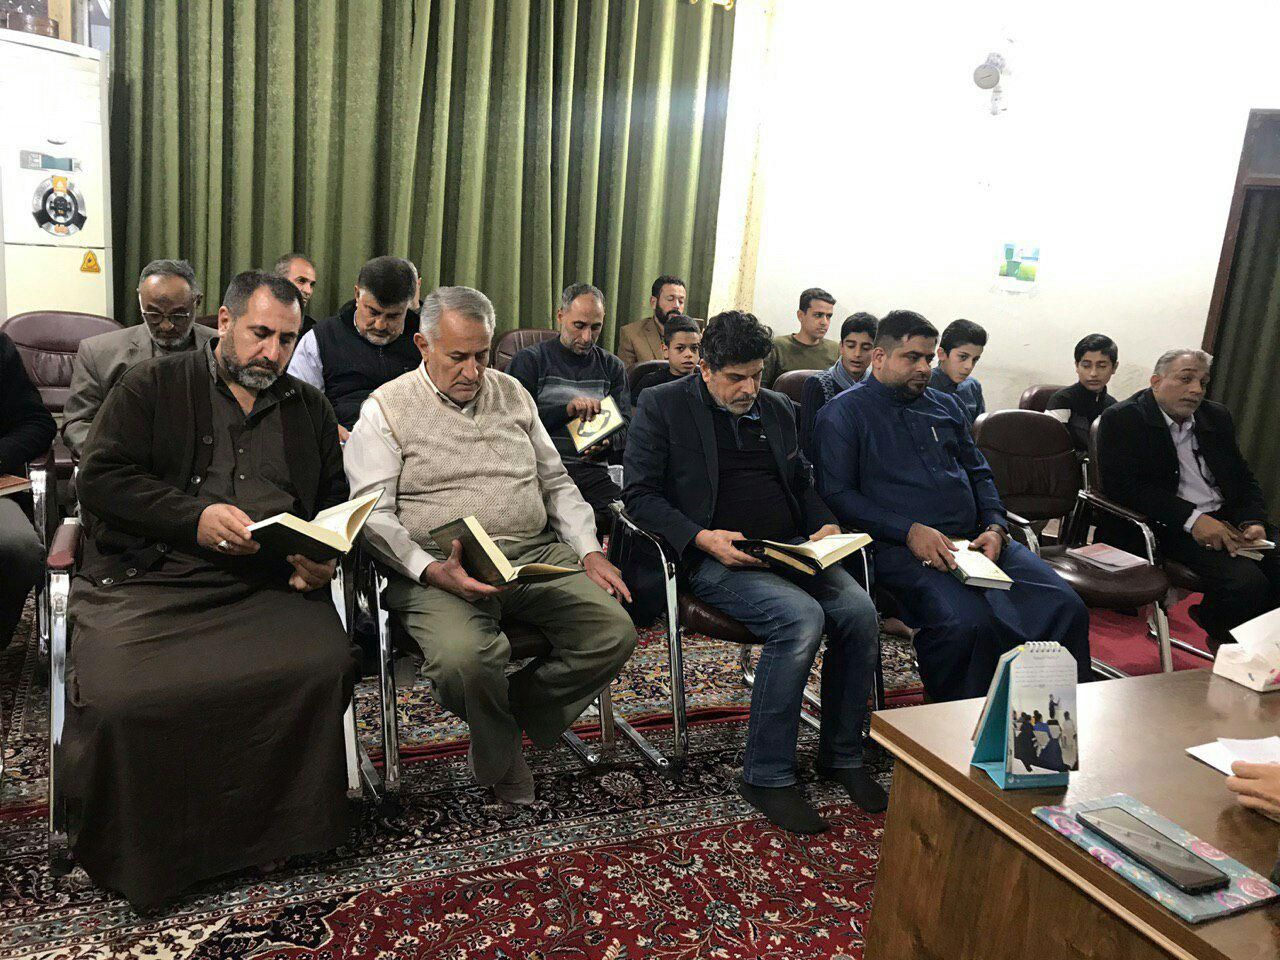 فرع معهد القرآن الكريم في بغداد يطلق مشروع الدورات القرآنية التخصصية